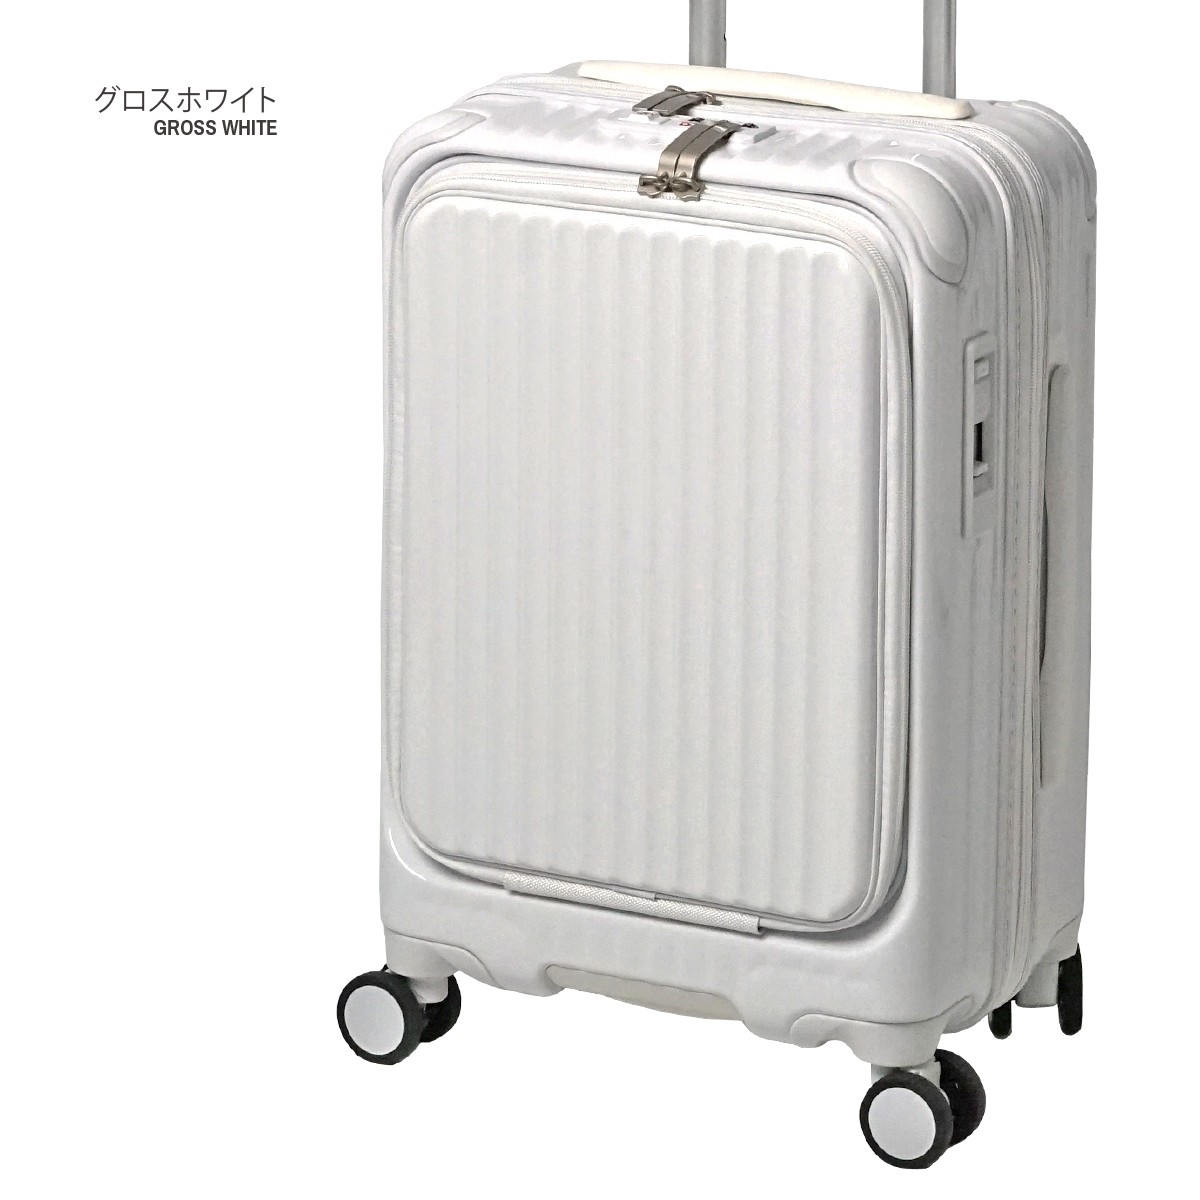 スーツケース 機内持ち込みサイズ フロントオープン型 2年保証 小型 